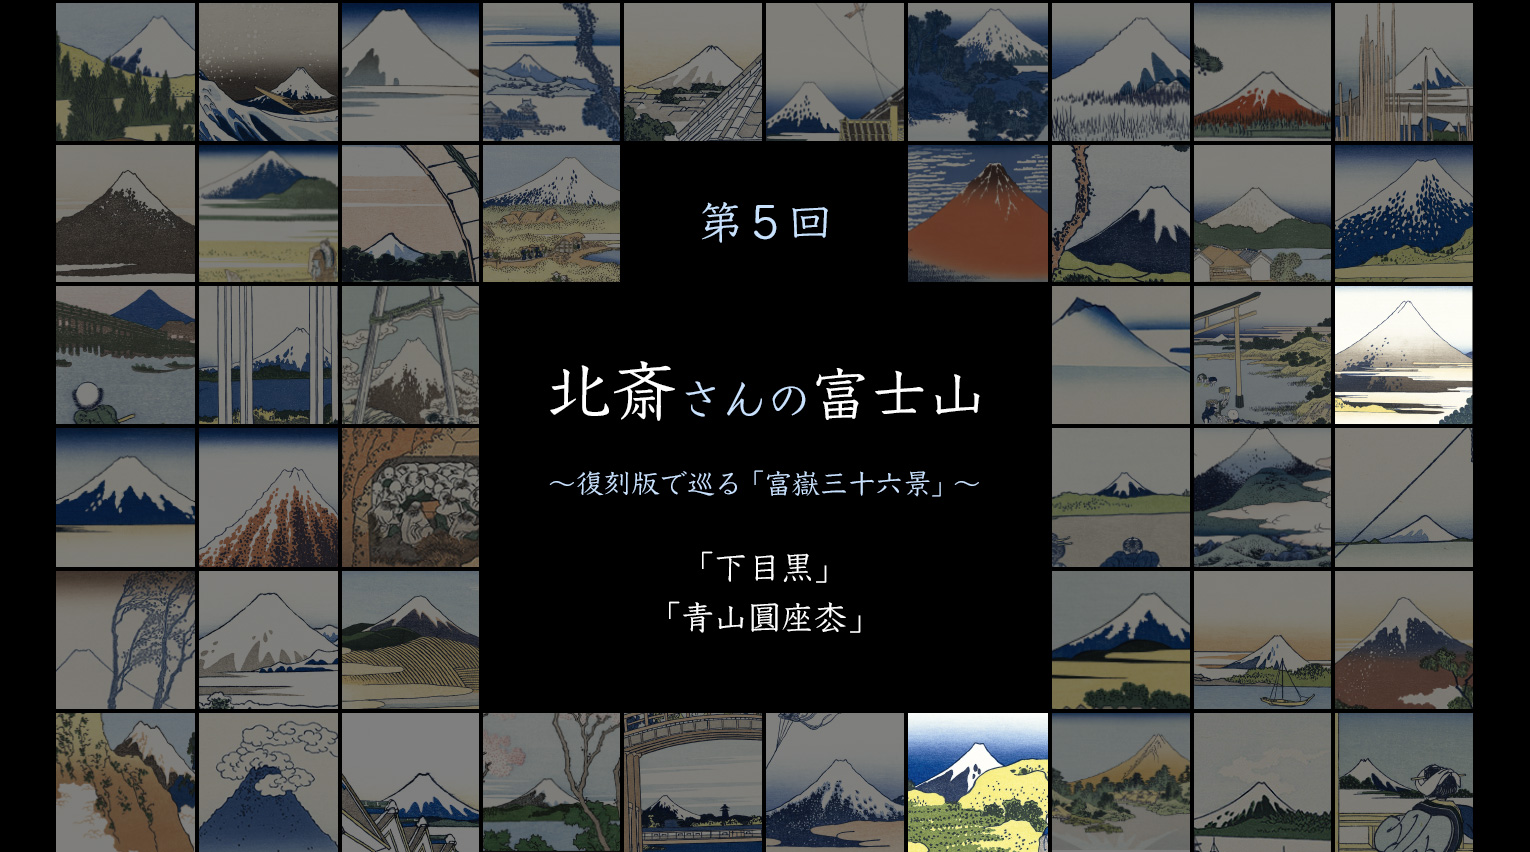 北斎さんの富士山 〜復刻版で巡る「富嶽三十六景」〜 (5)【PR】